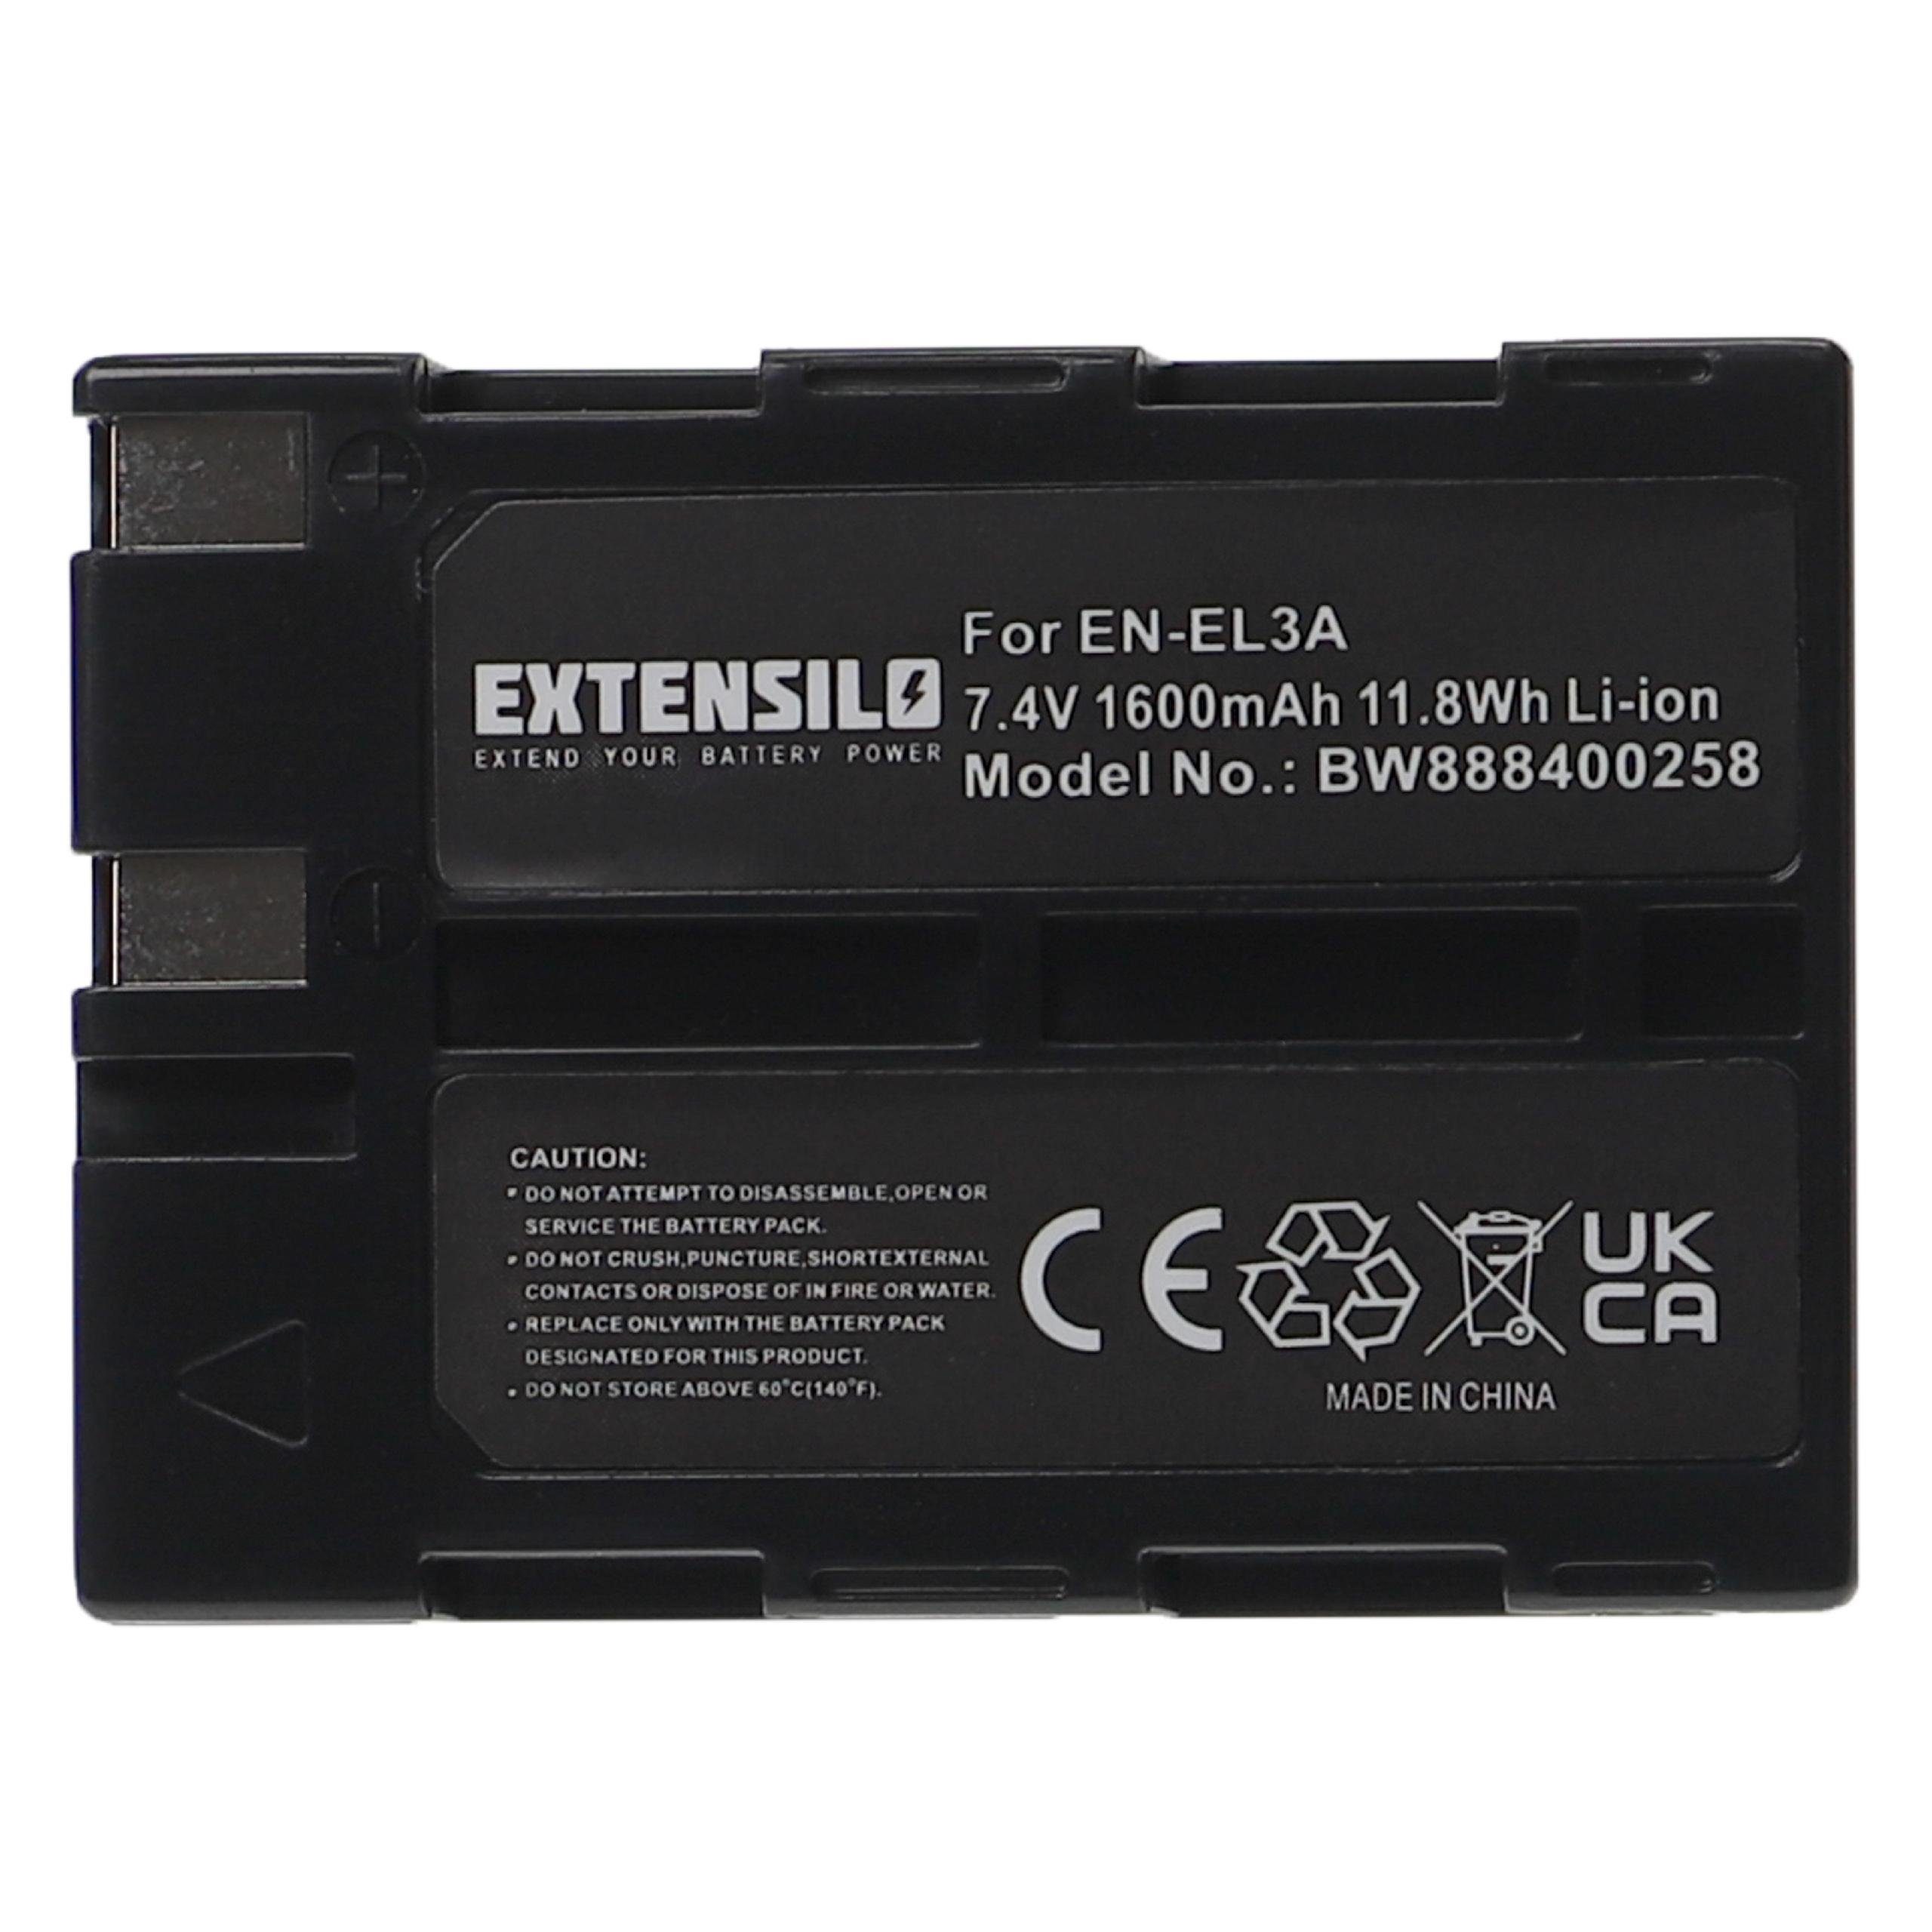 Extensilo Ersatz für Nikon EN-EL3, EN-EL3a für Kamera-Akku Li-Ion 1600 mAh (7,4 V)